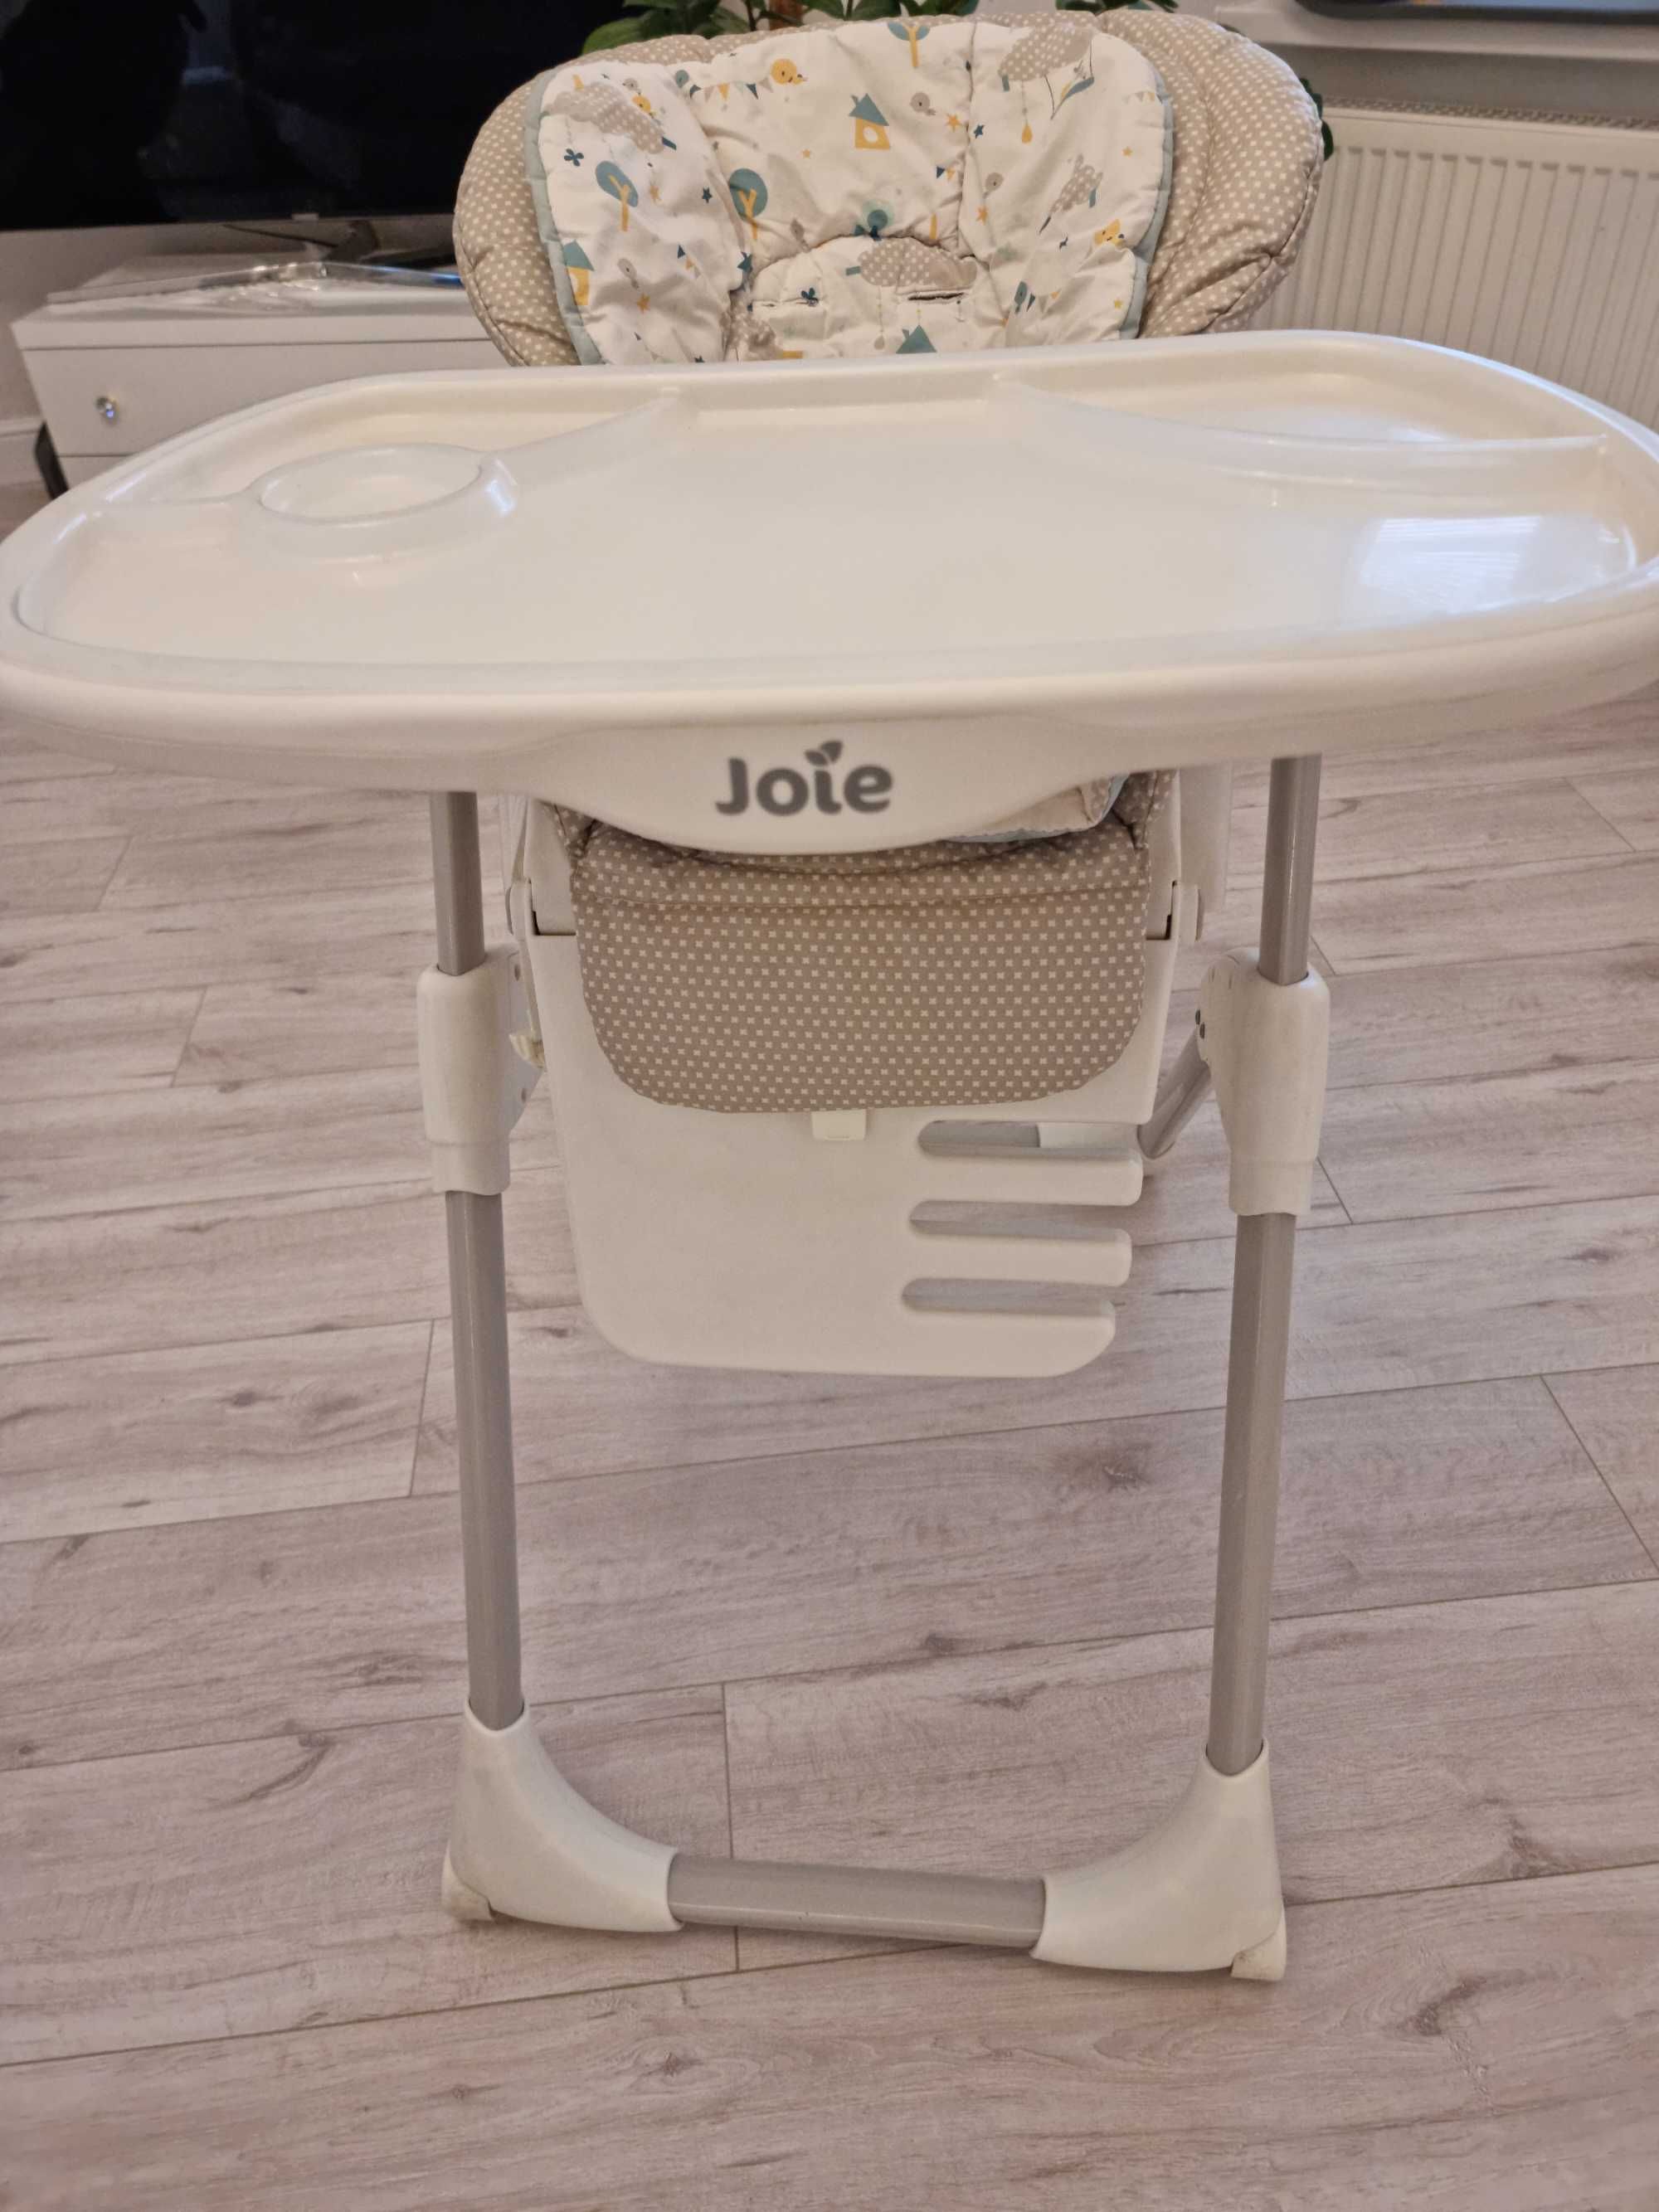 Продам детский стульчик Joie в отличном качестве.